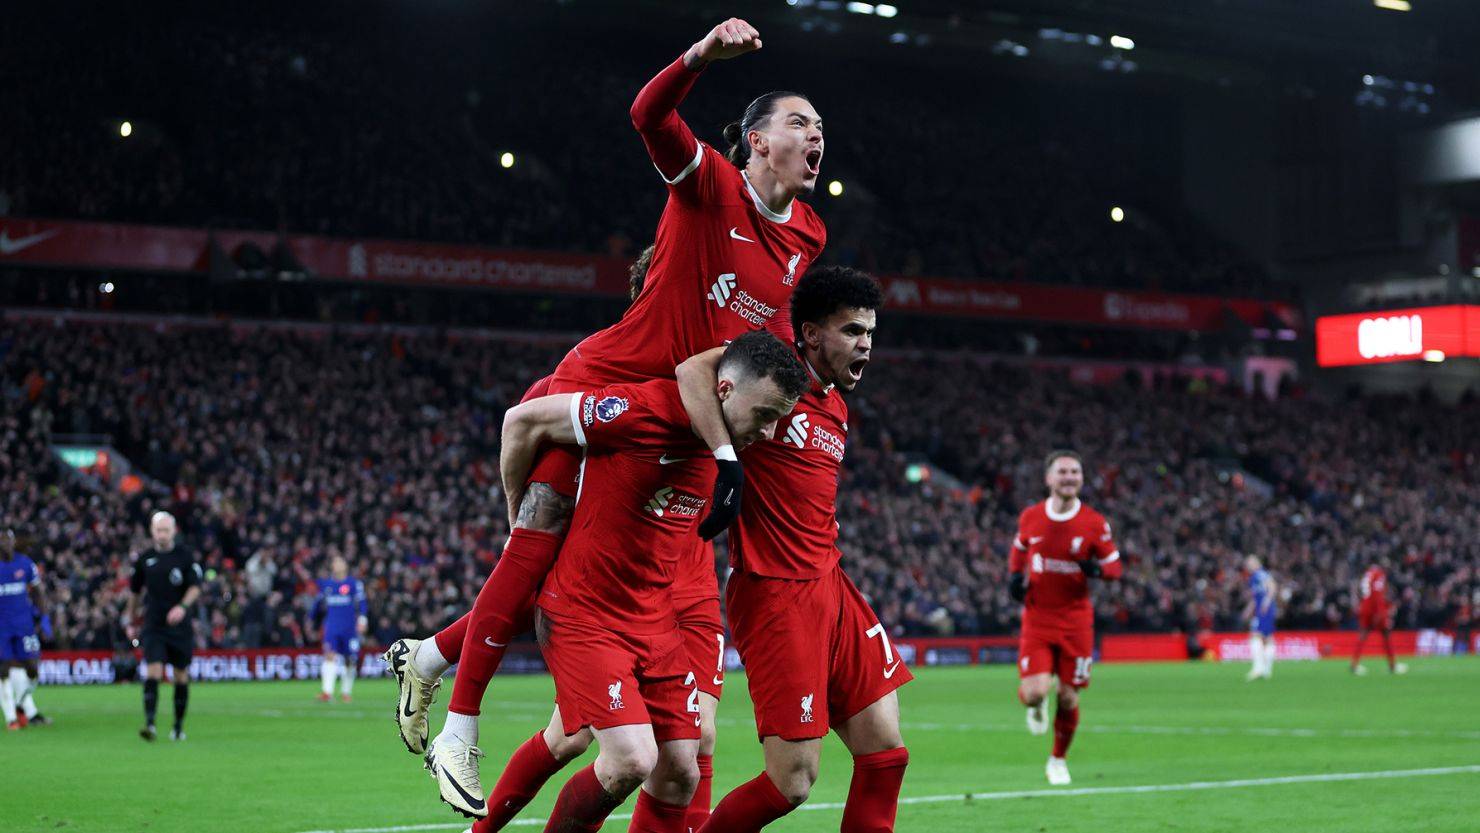 Liverpool vẫn thể hiện phong độ mạnh mẽ, với chiến thắng 4-1 trước Chelsea, kéo dài chuỗi trận bất bại lên 11 trận